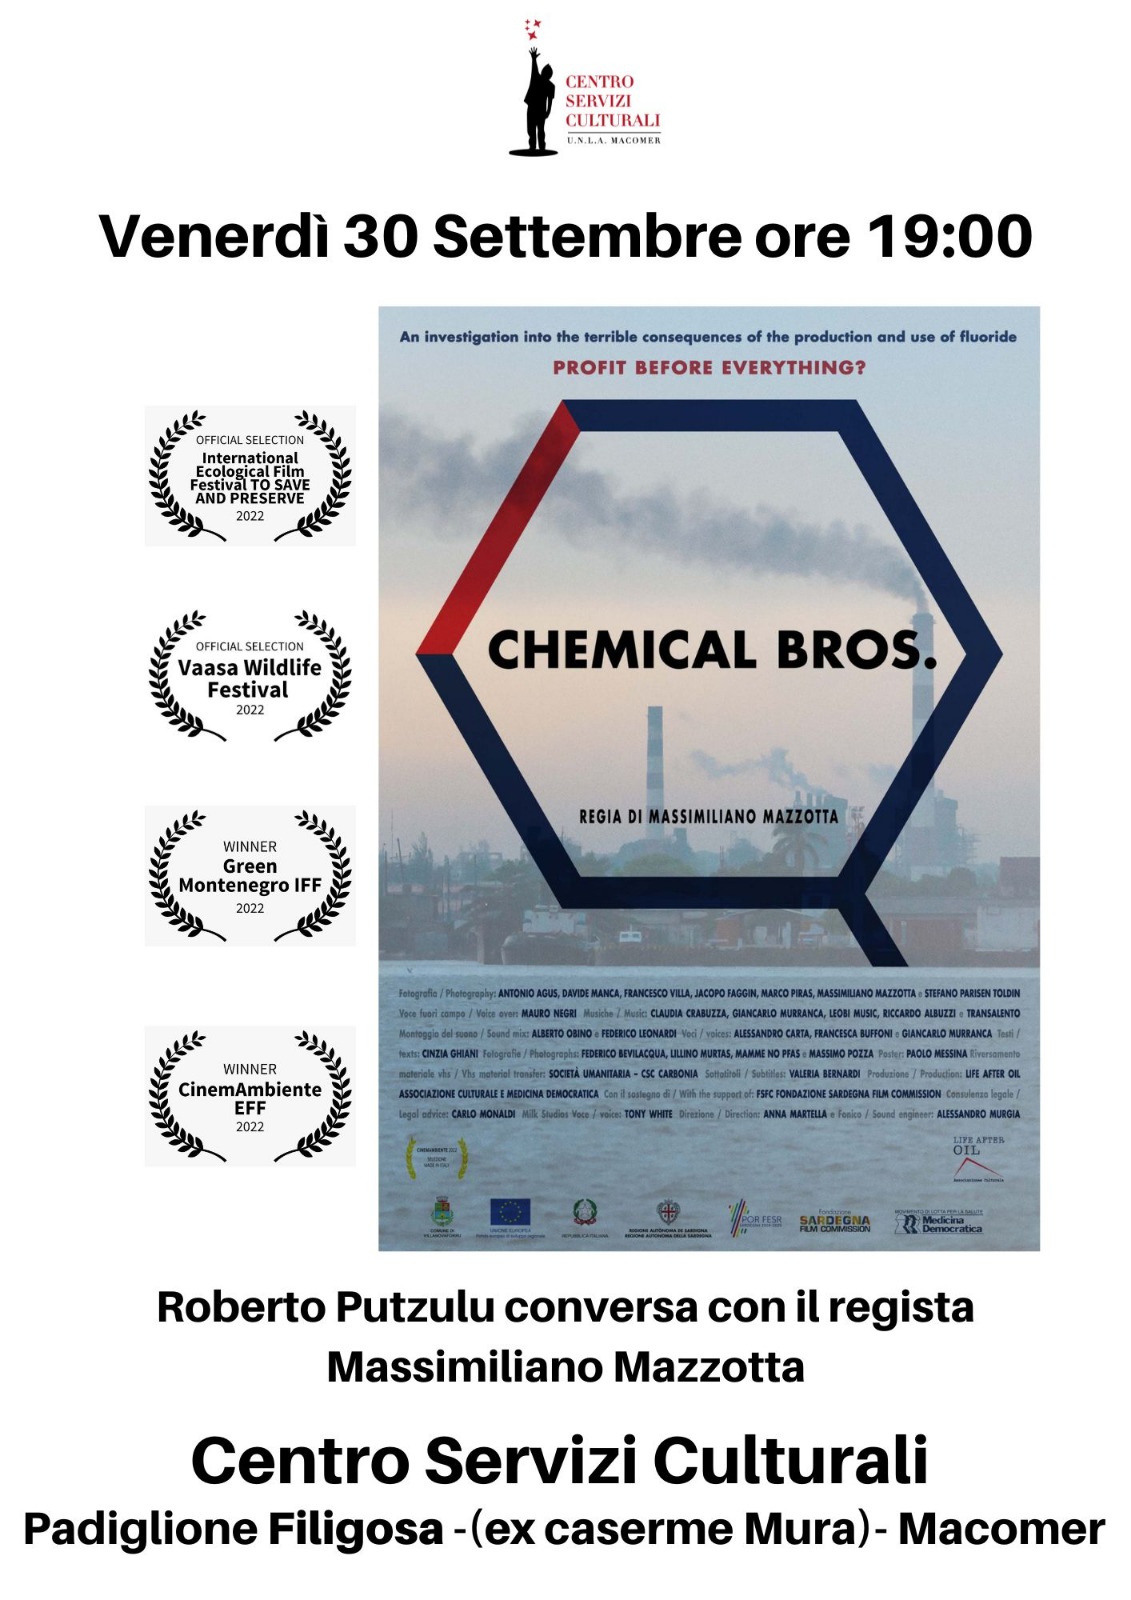 Proiezione documentario “Chemical bros.” di Massimiliano Mazzotta